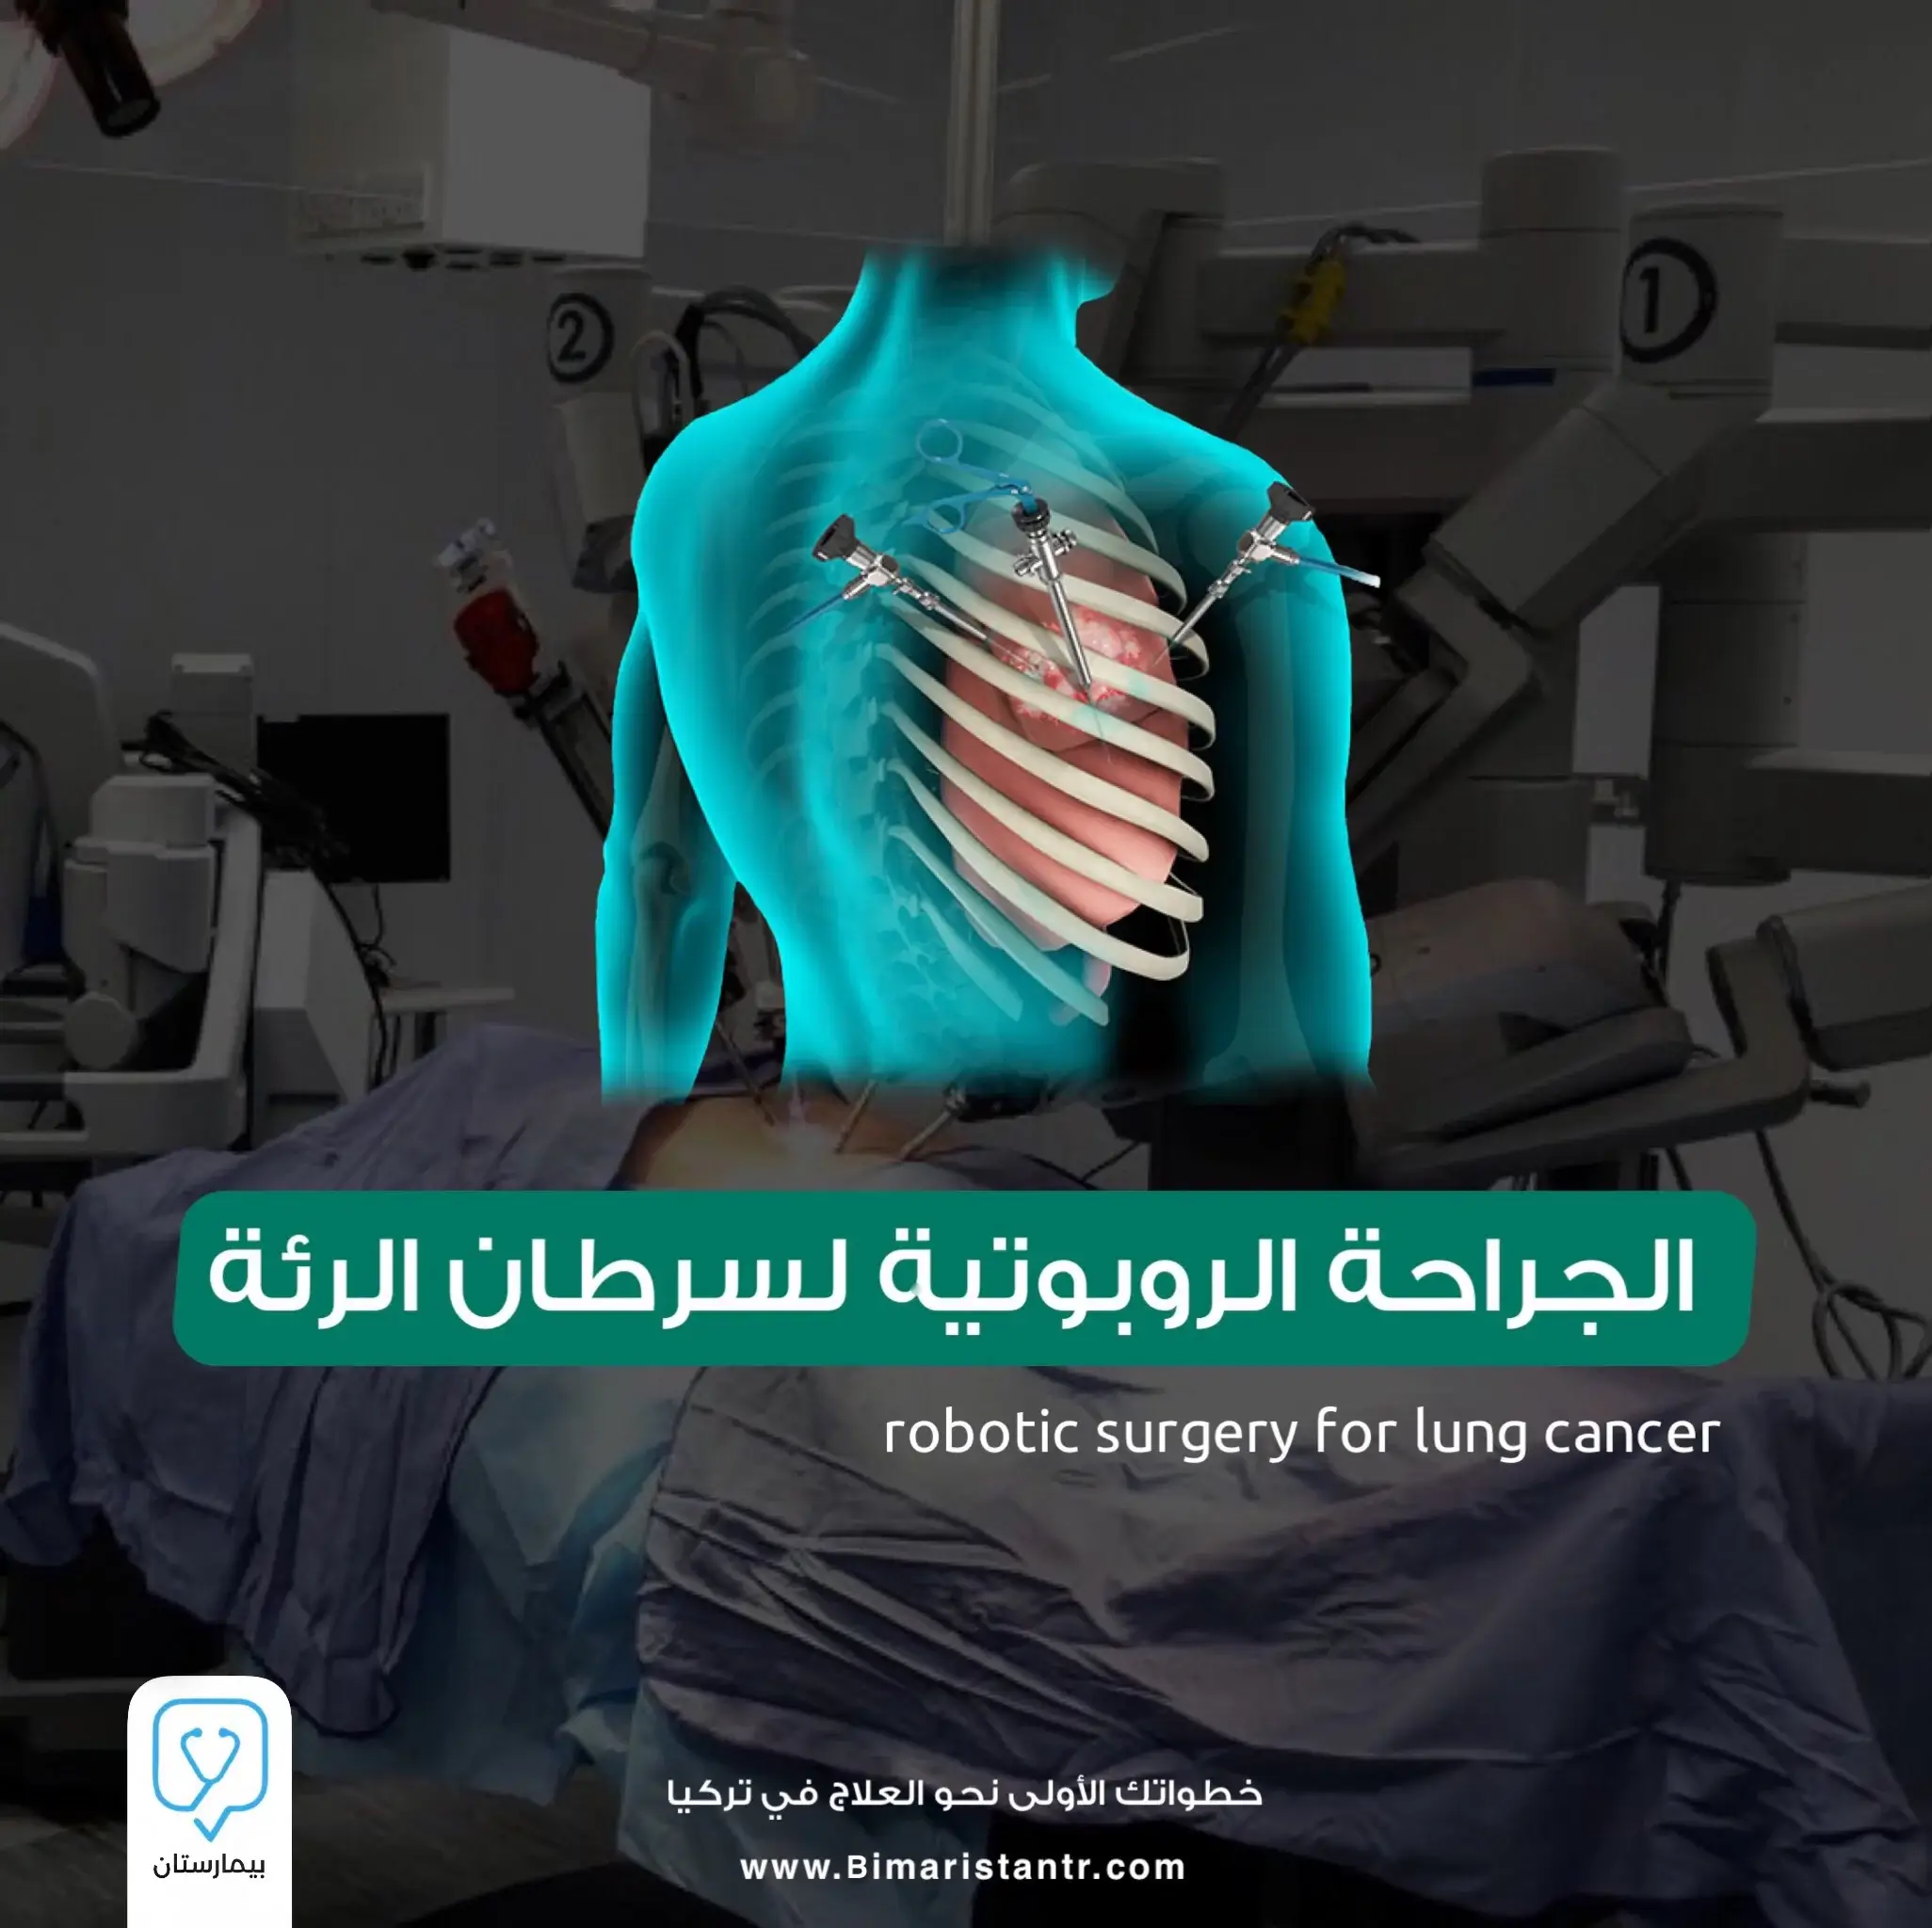 Türkiye'de akciğer kanserine robotik cerrahi